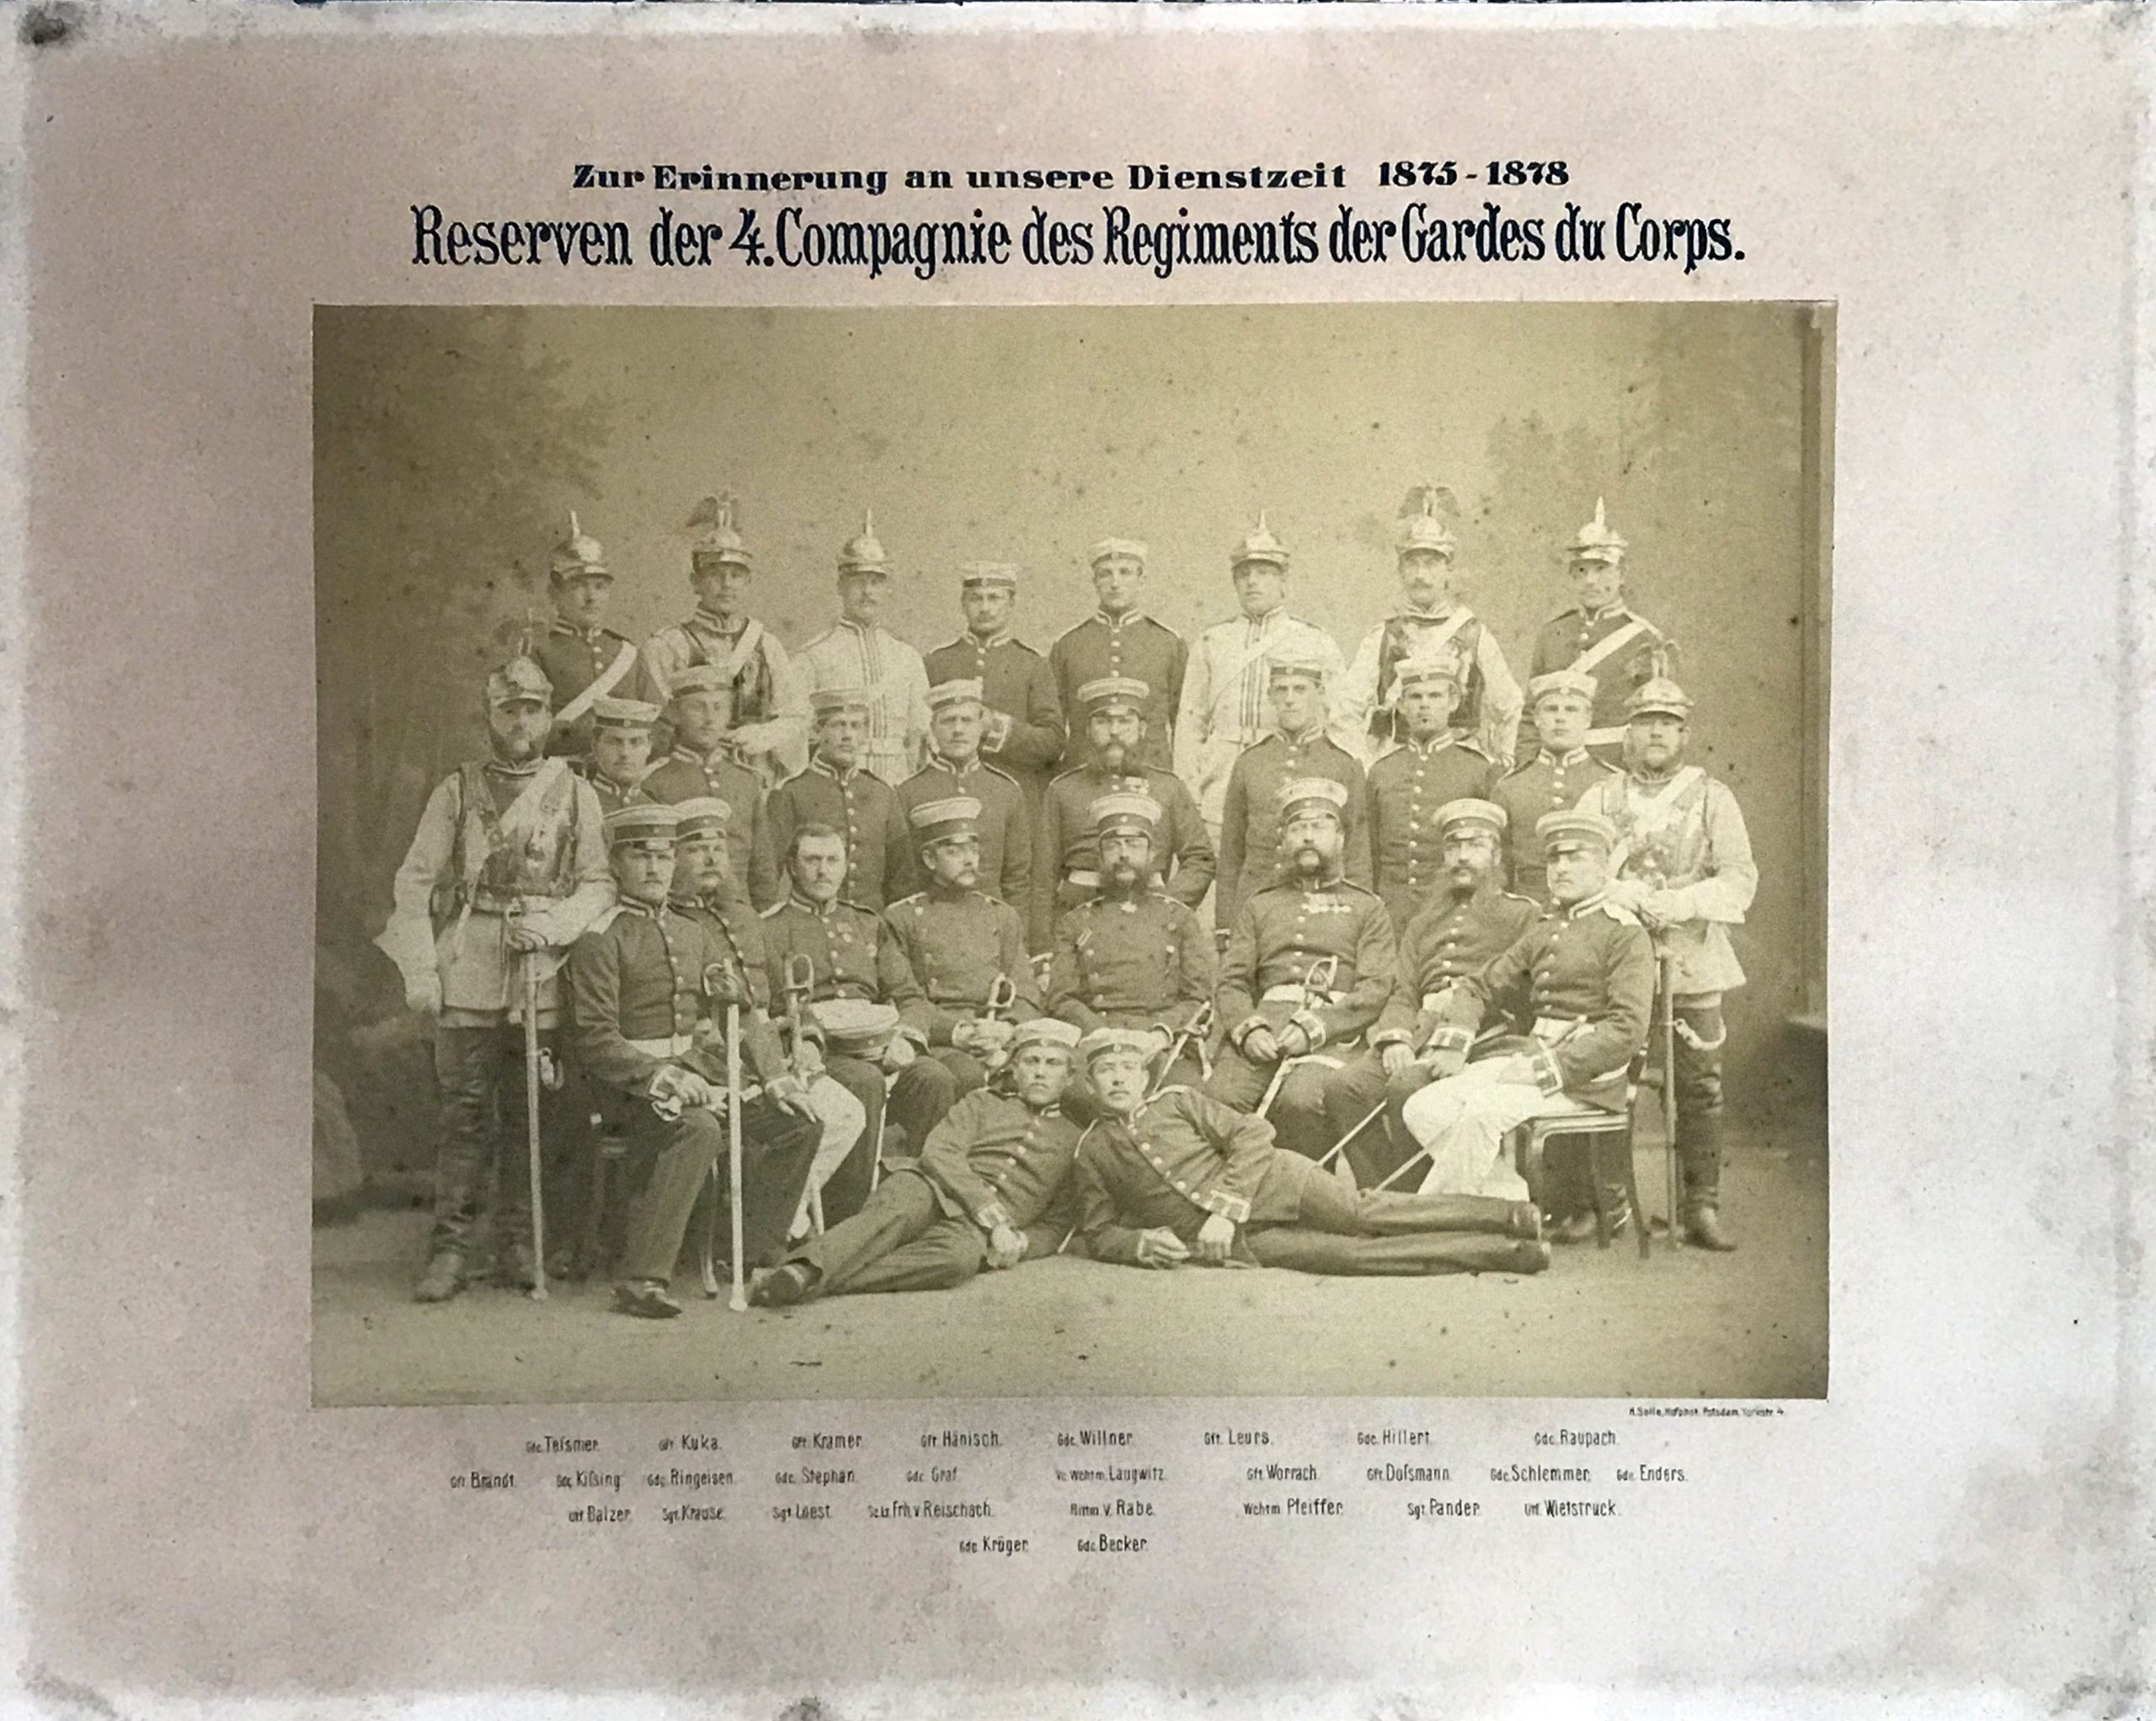 Grande photo de régiment - Soldat Allemand / Alsacien - Cavalerie - Grande tenue - Casque à pointe - aigle - Garde du Corps - 1875/1878